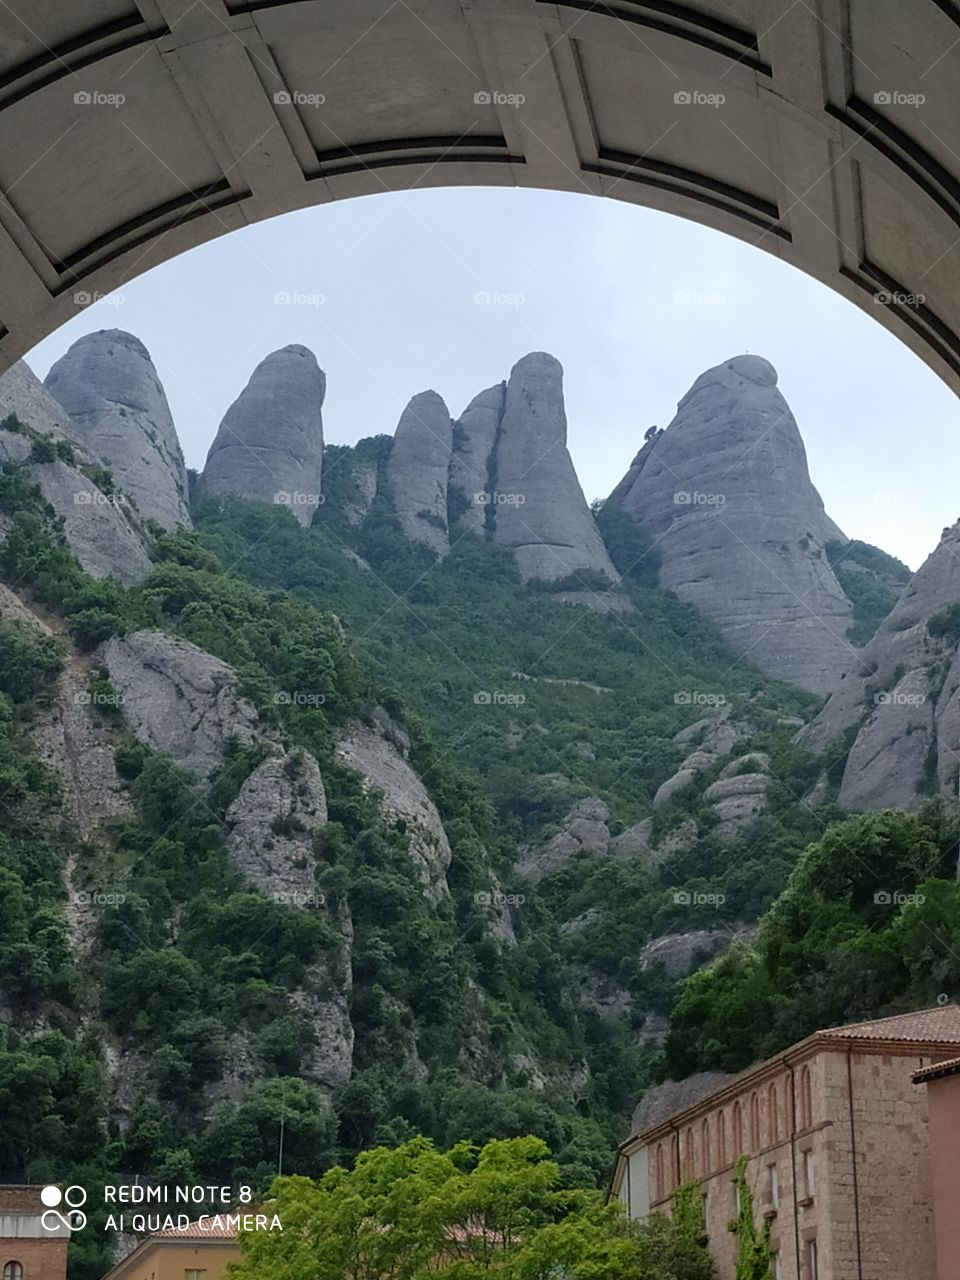 strange mountains